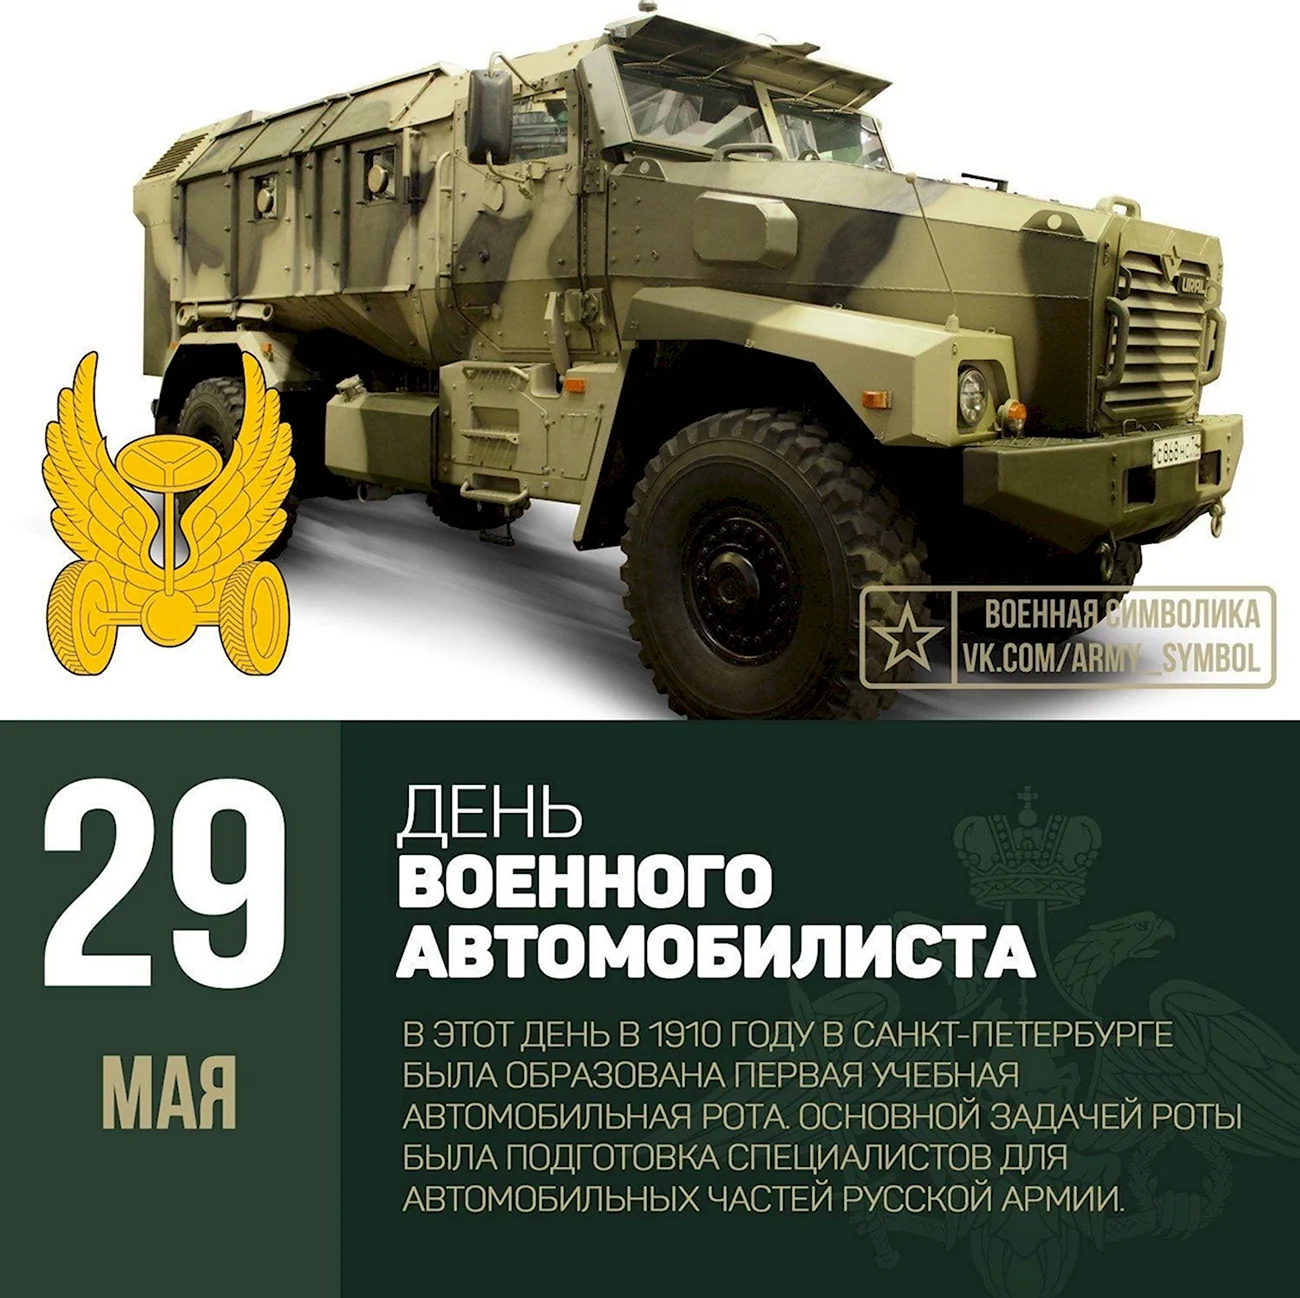 29 Мая вооруженные силы РФ отмечают день военного автомобилиста.. Поздравление